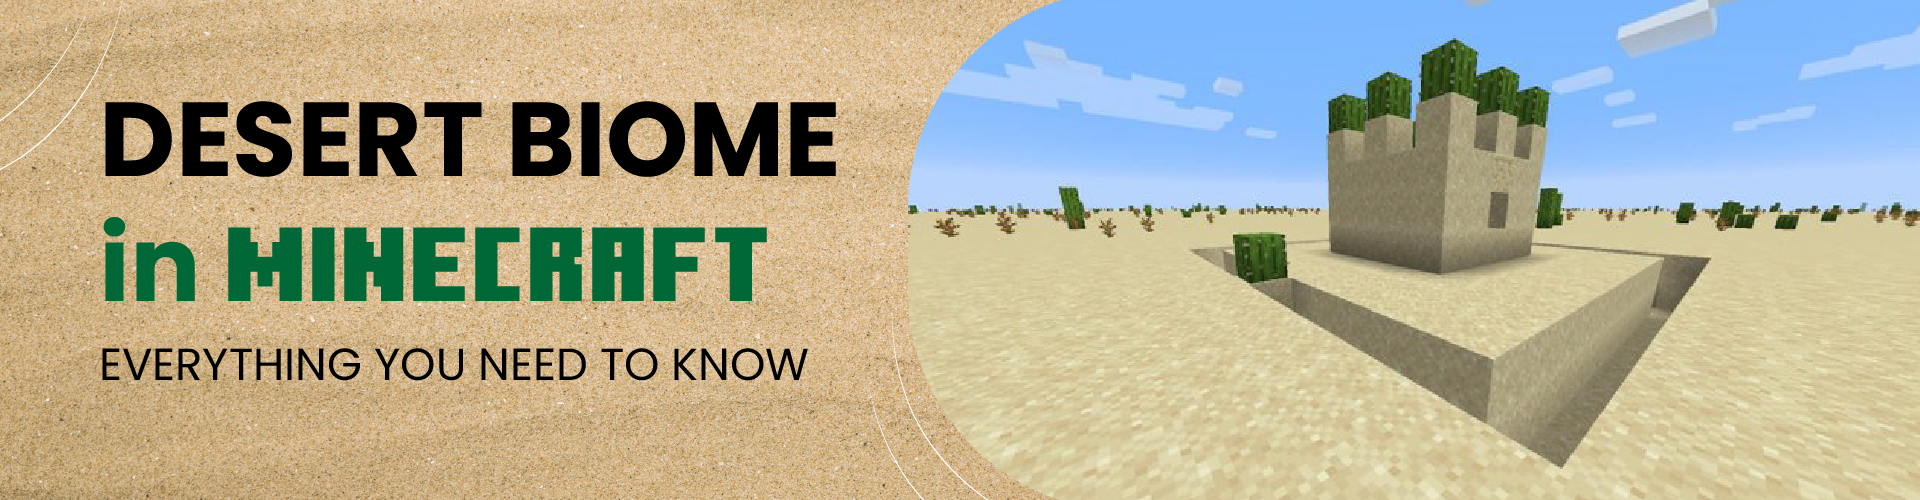 Desert Biome in Minecraft